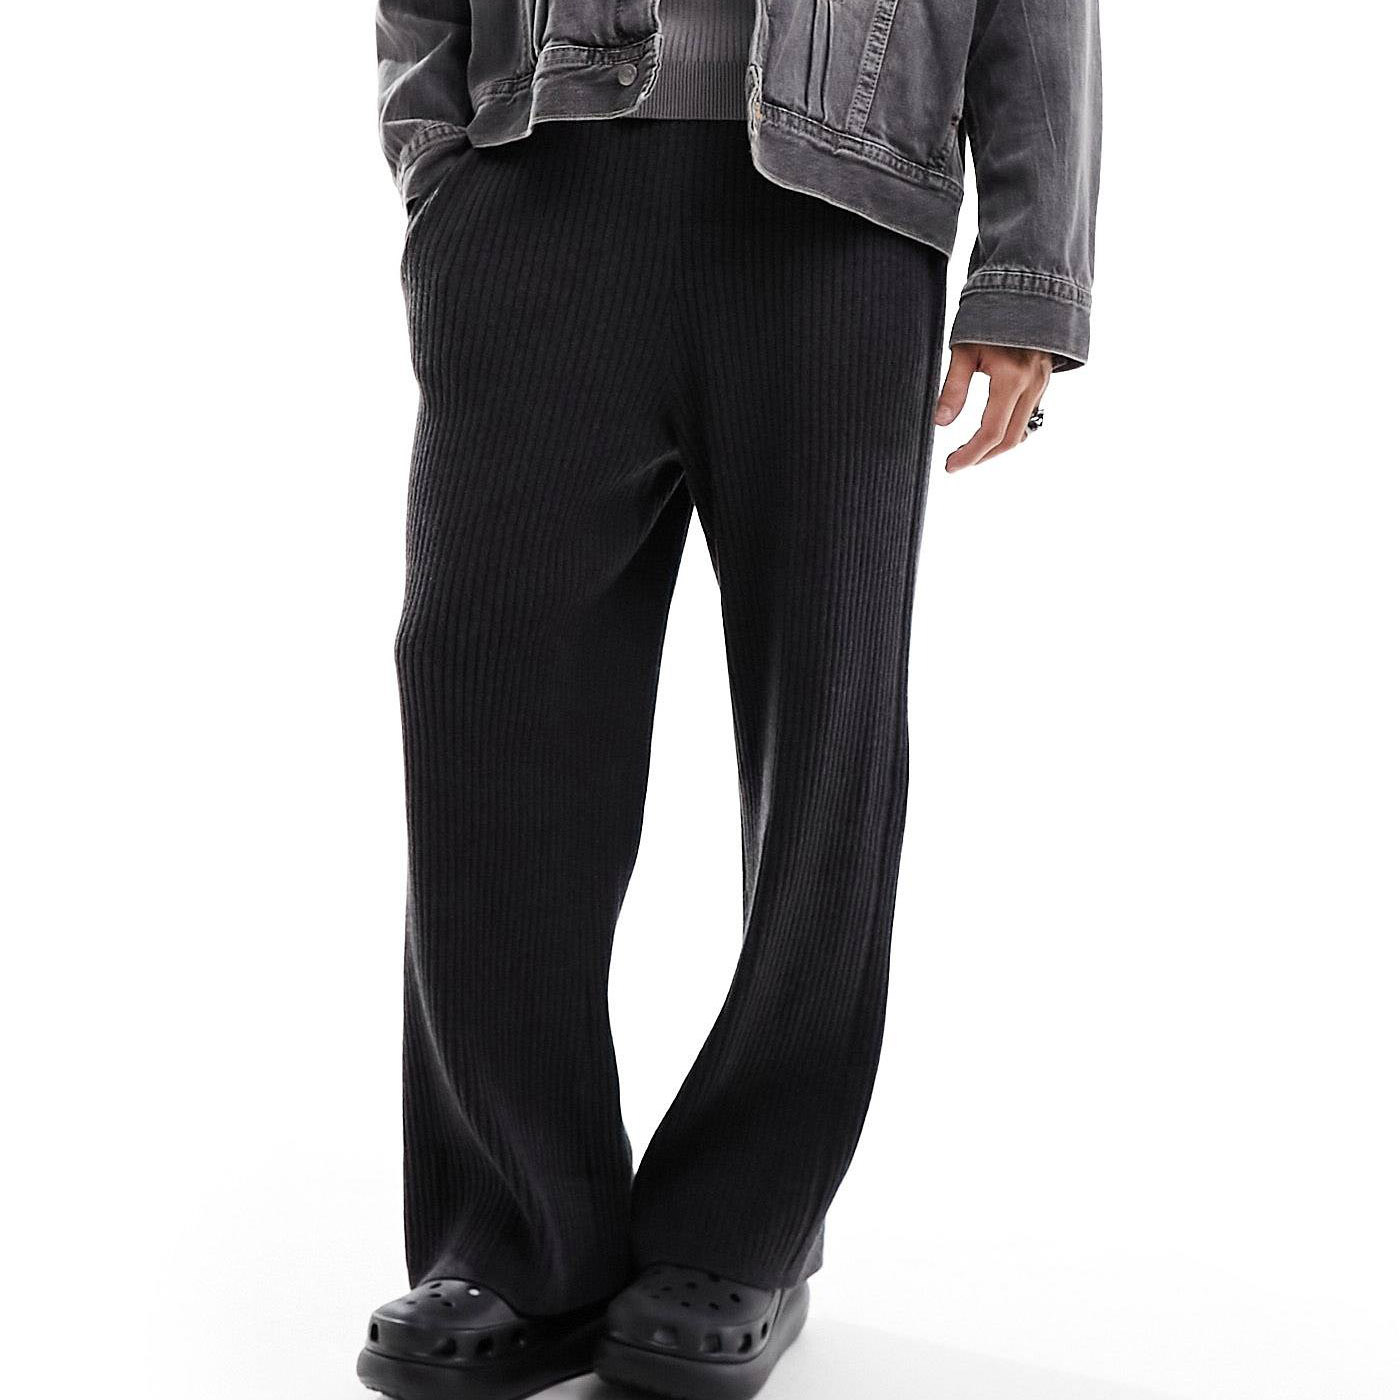 Брюки Weekday Darwin Loose Fit Knitted, темно-серый брюки спортивные мужские dysot серые